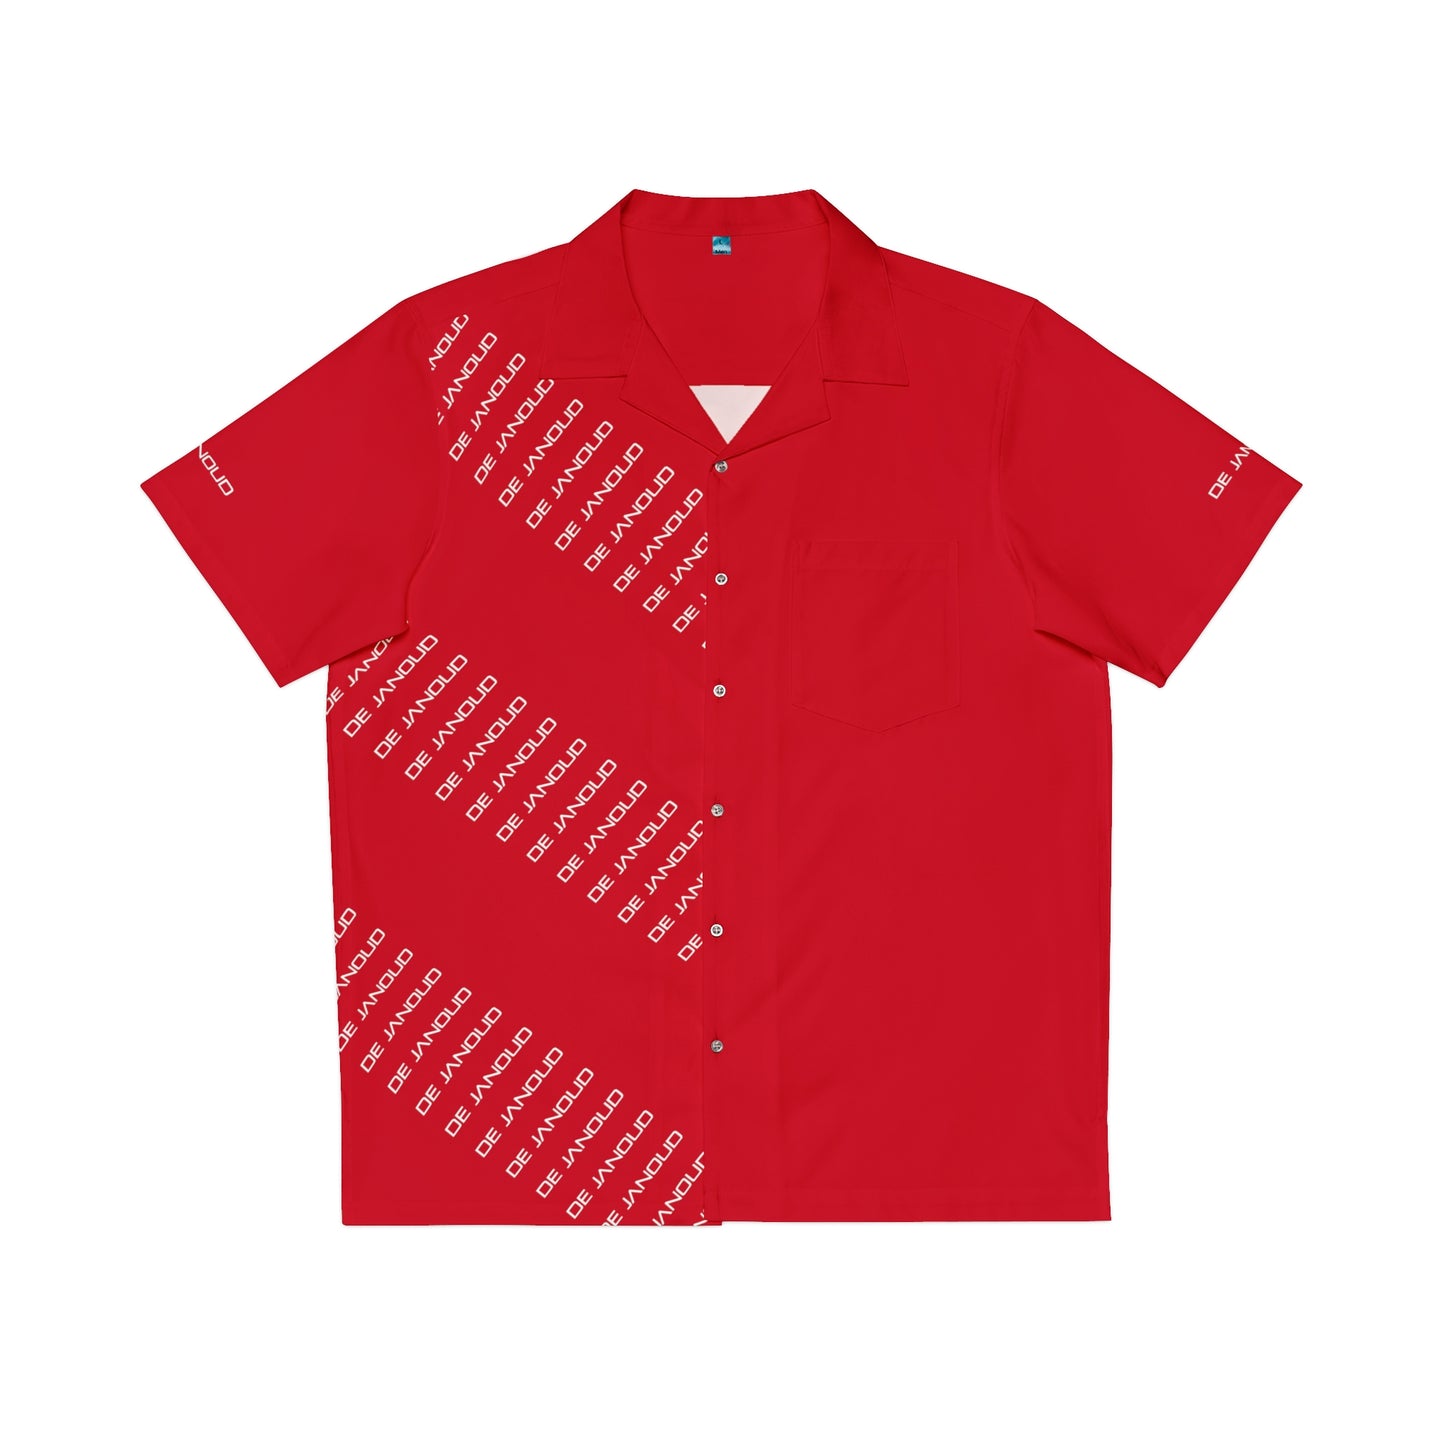 De Janoud - Fairway Shirt / Hemd - SQR red